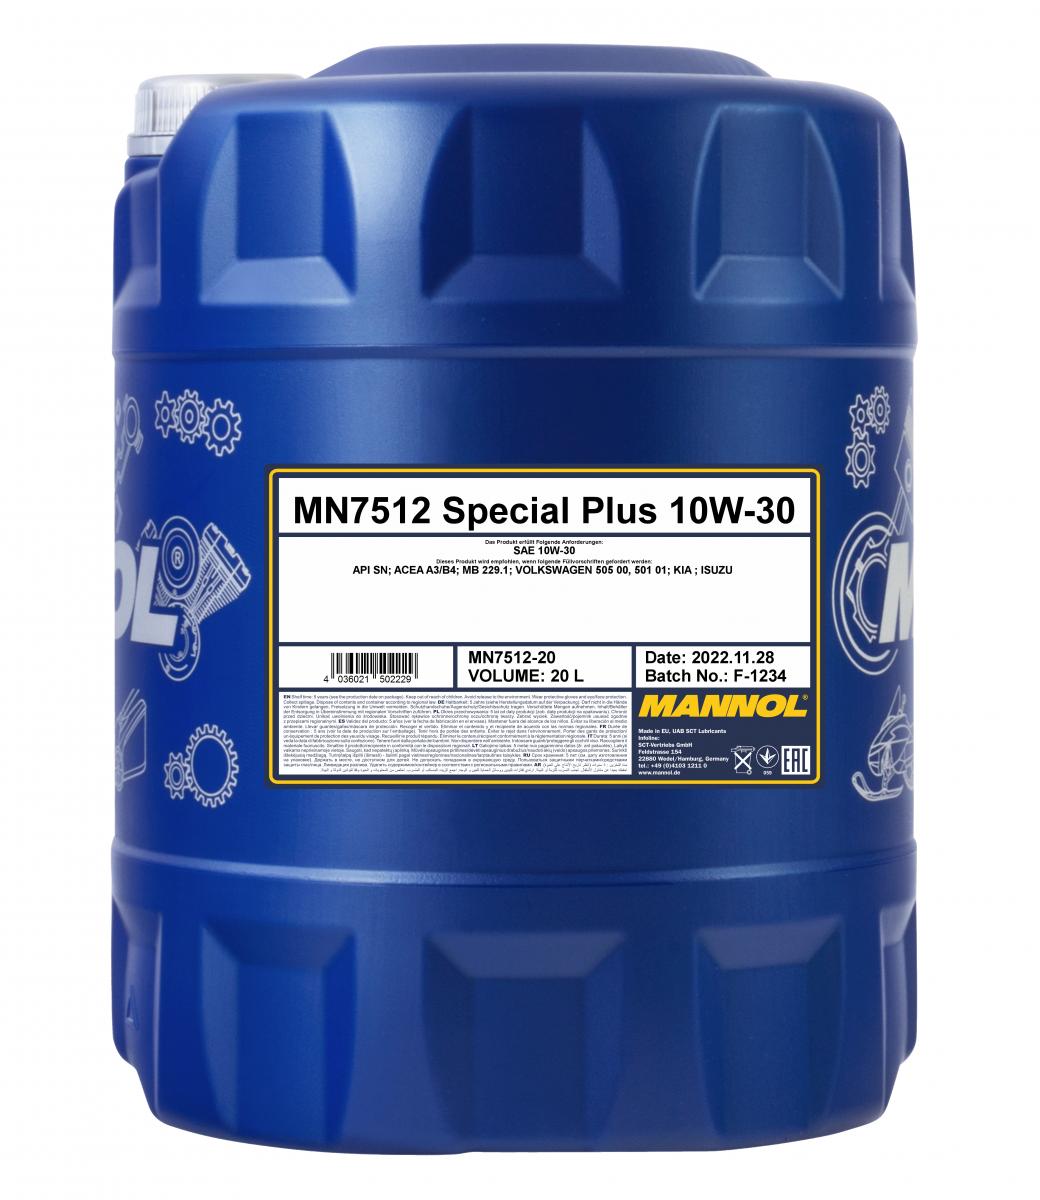 MN7512 Special Plus 10W-30